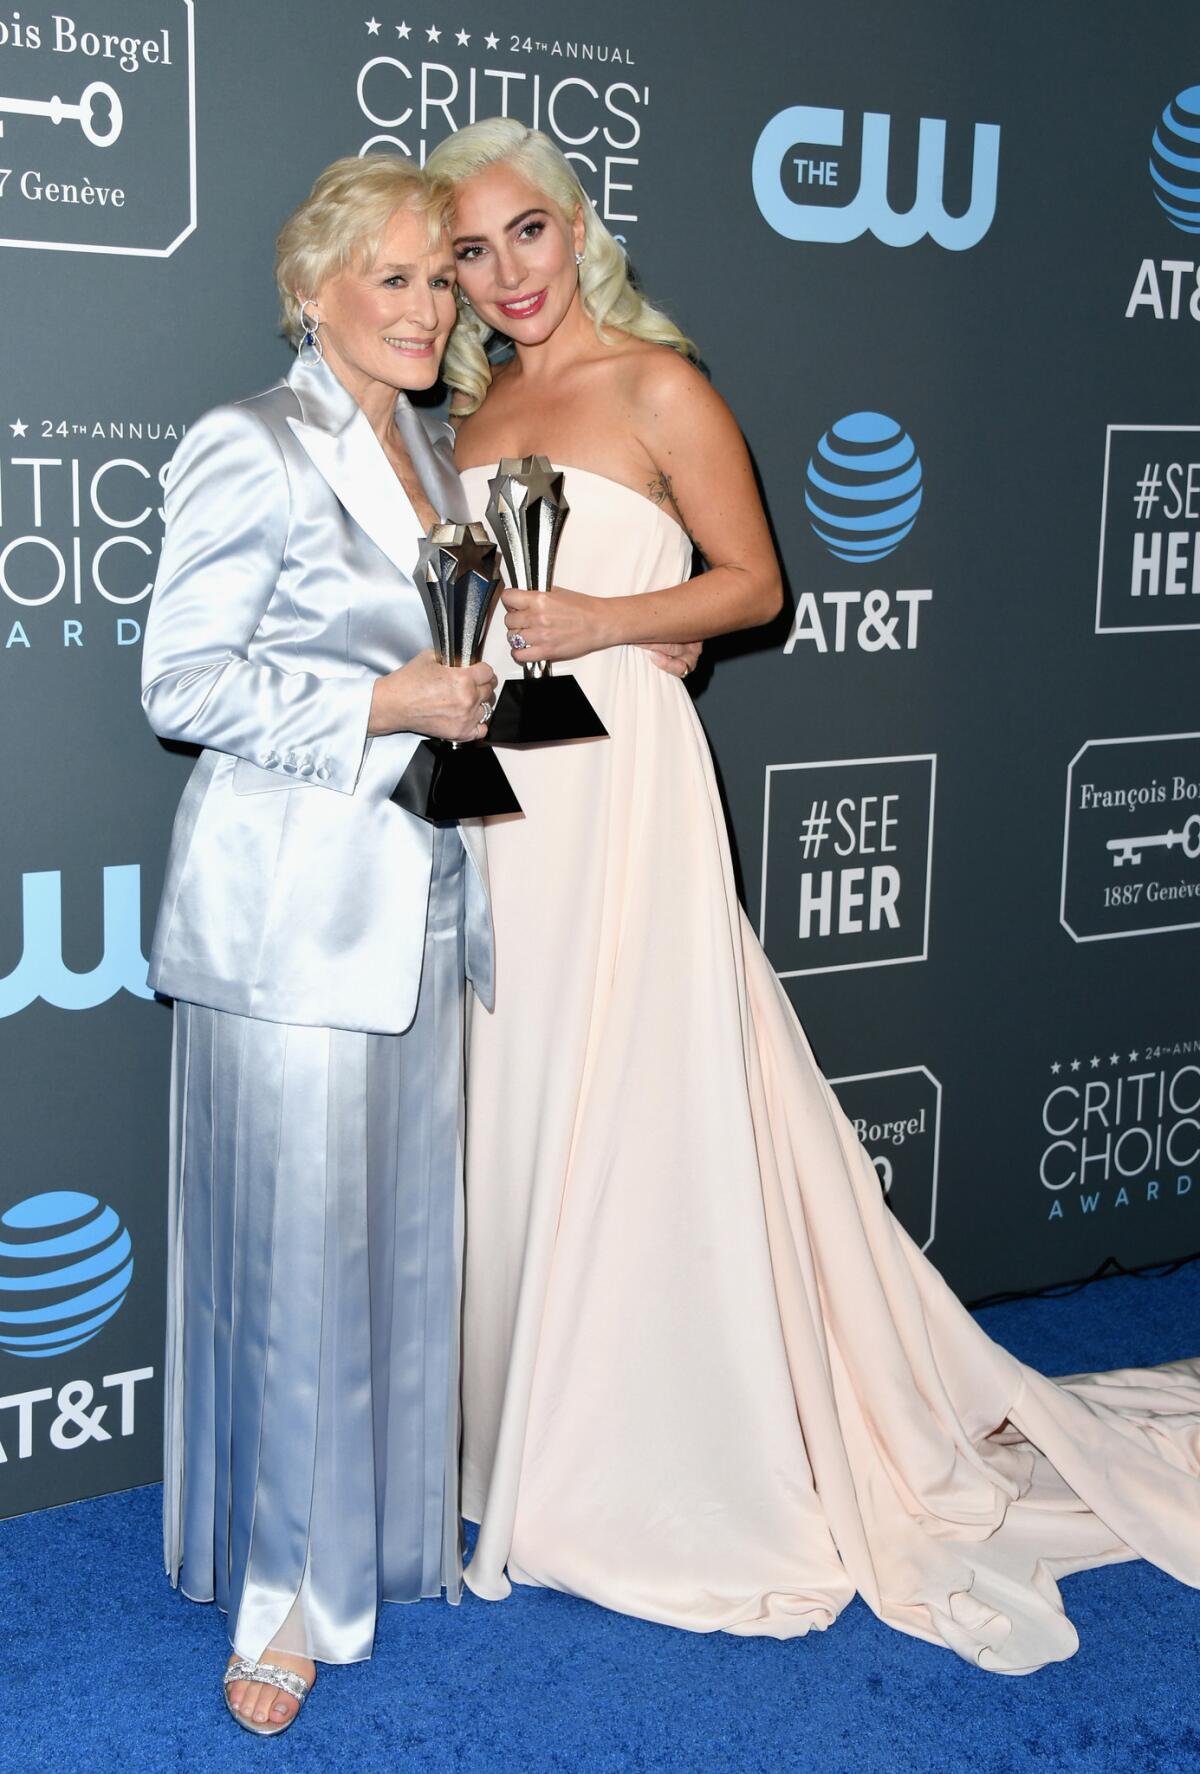 Glenn Close and Lady Gaga tied for the best actress award at the 24th Critics' Choice Awards at Barker Hangar in Santa Monica on Jan. 13.